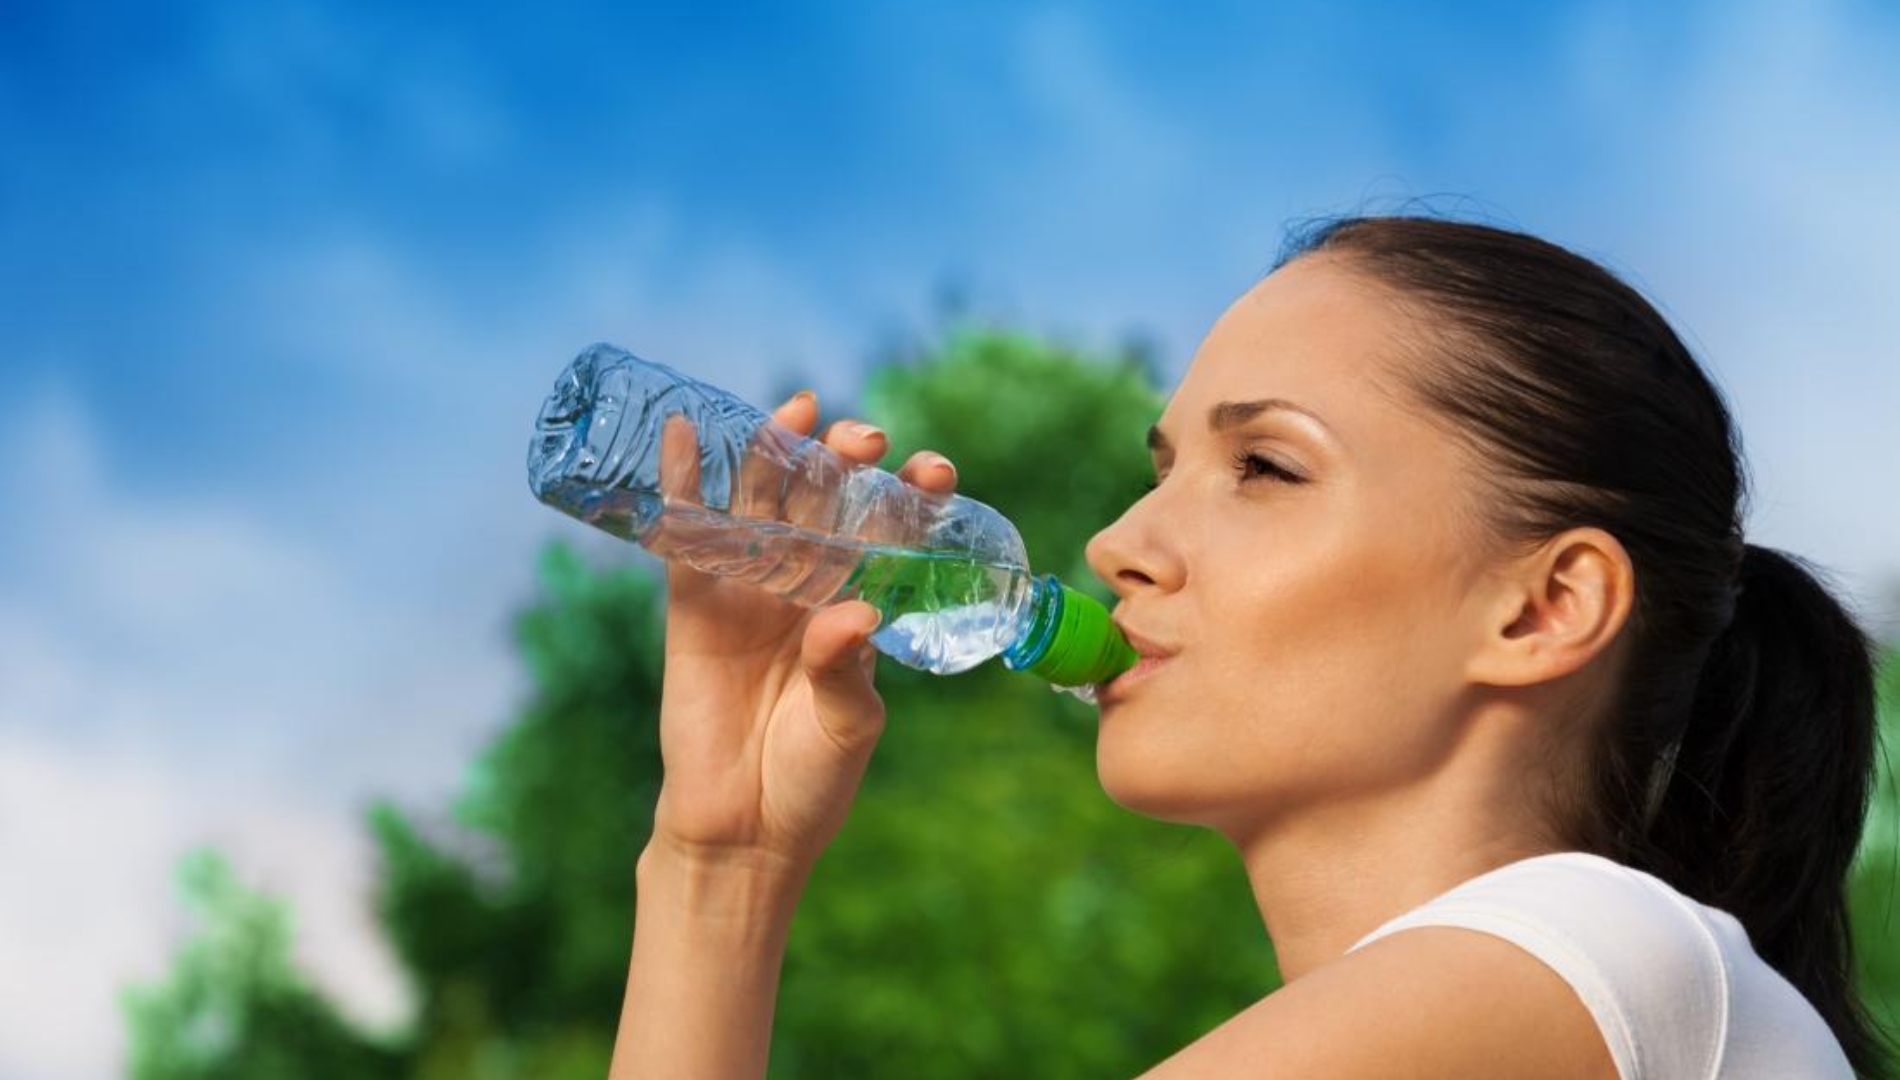 Игры пить воду. Человек пьет воду. Питье воды. Вода и человек. Здоровый образ жизни вода.